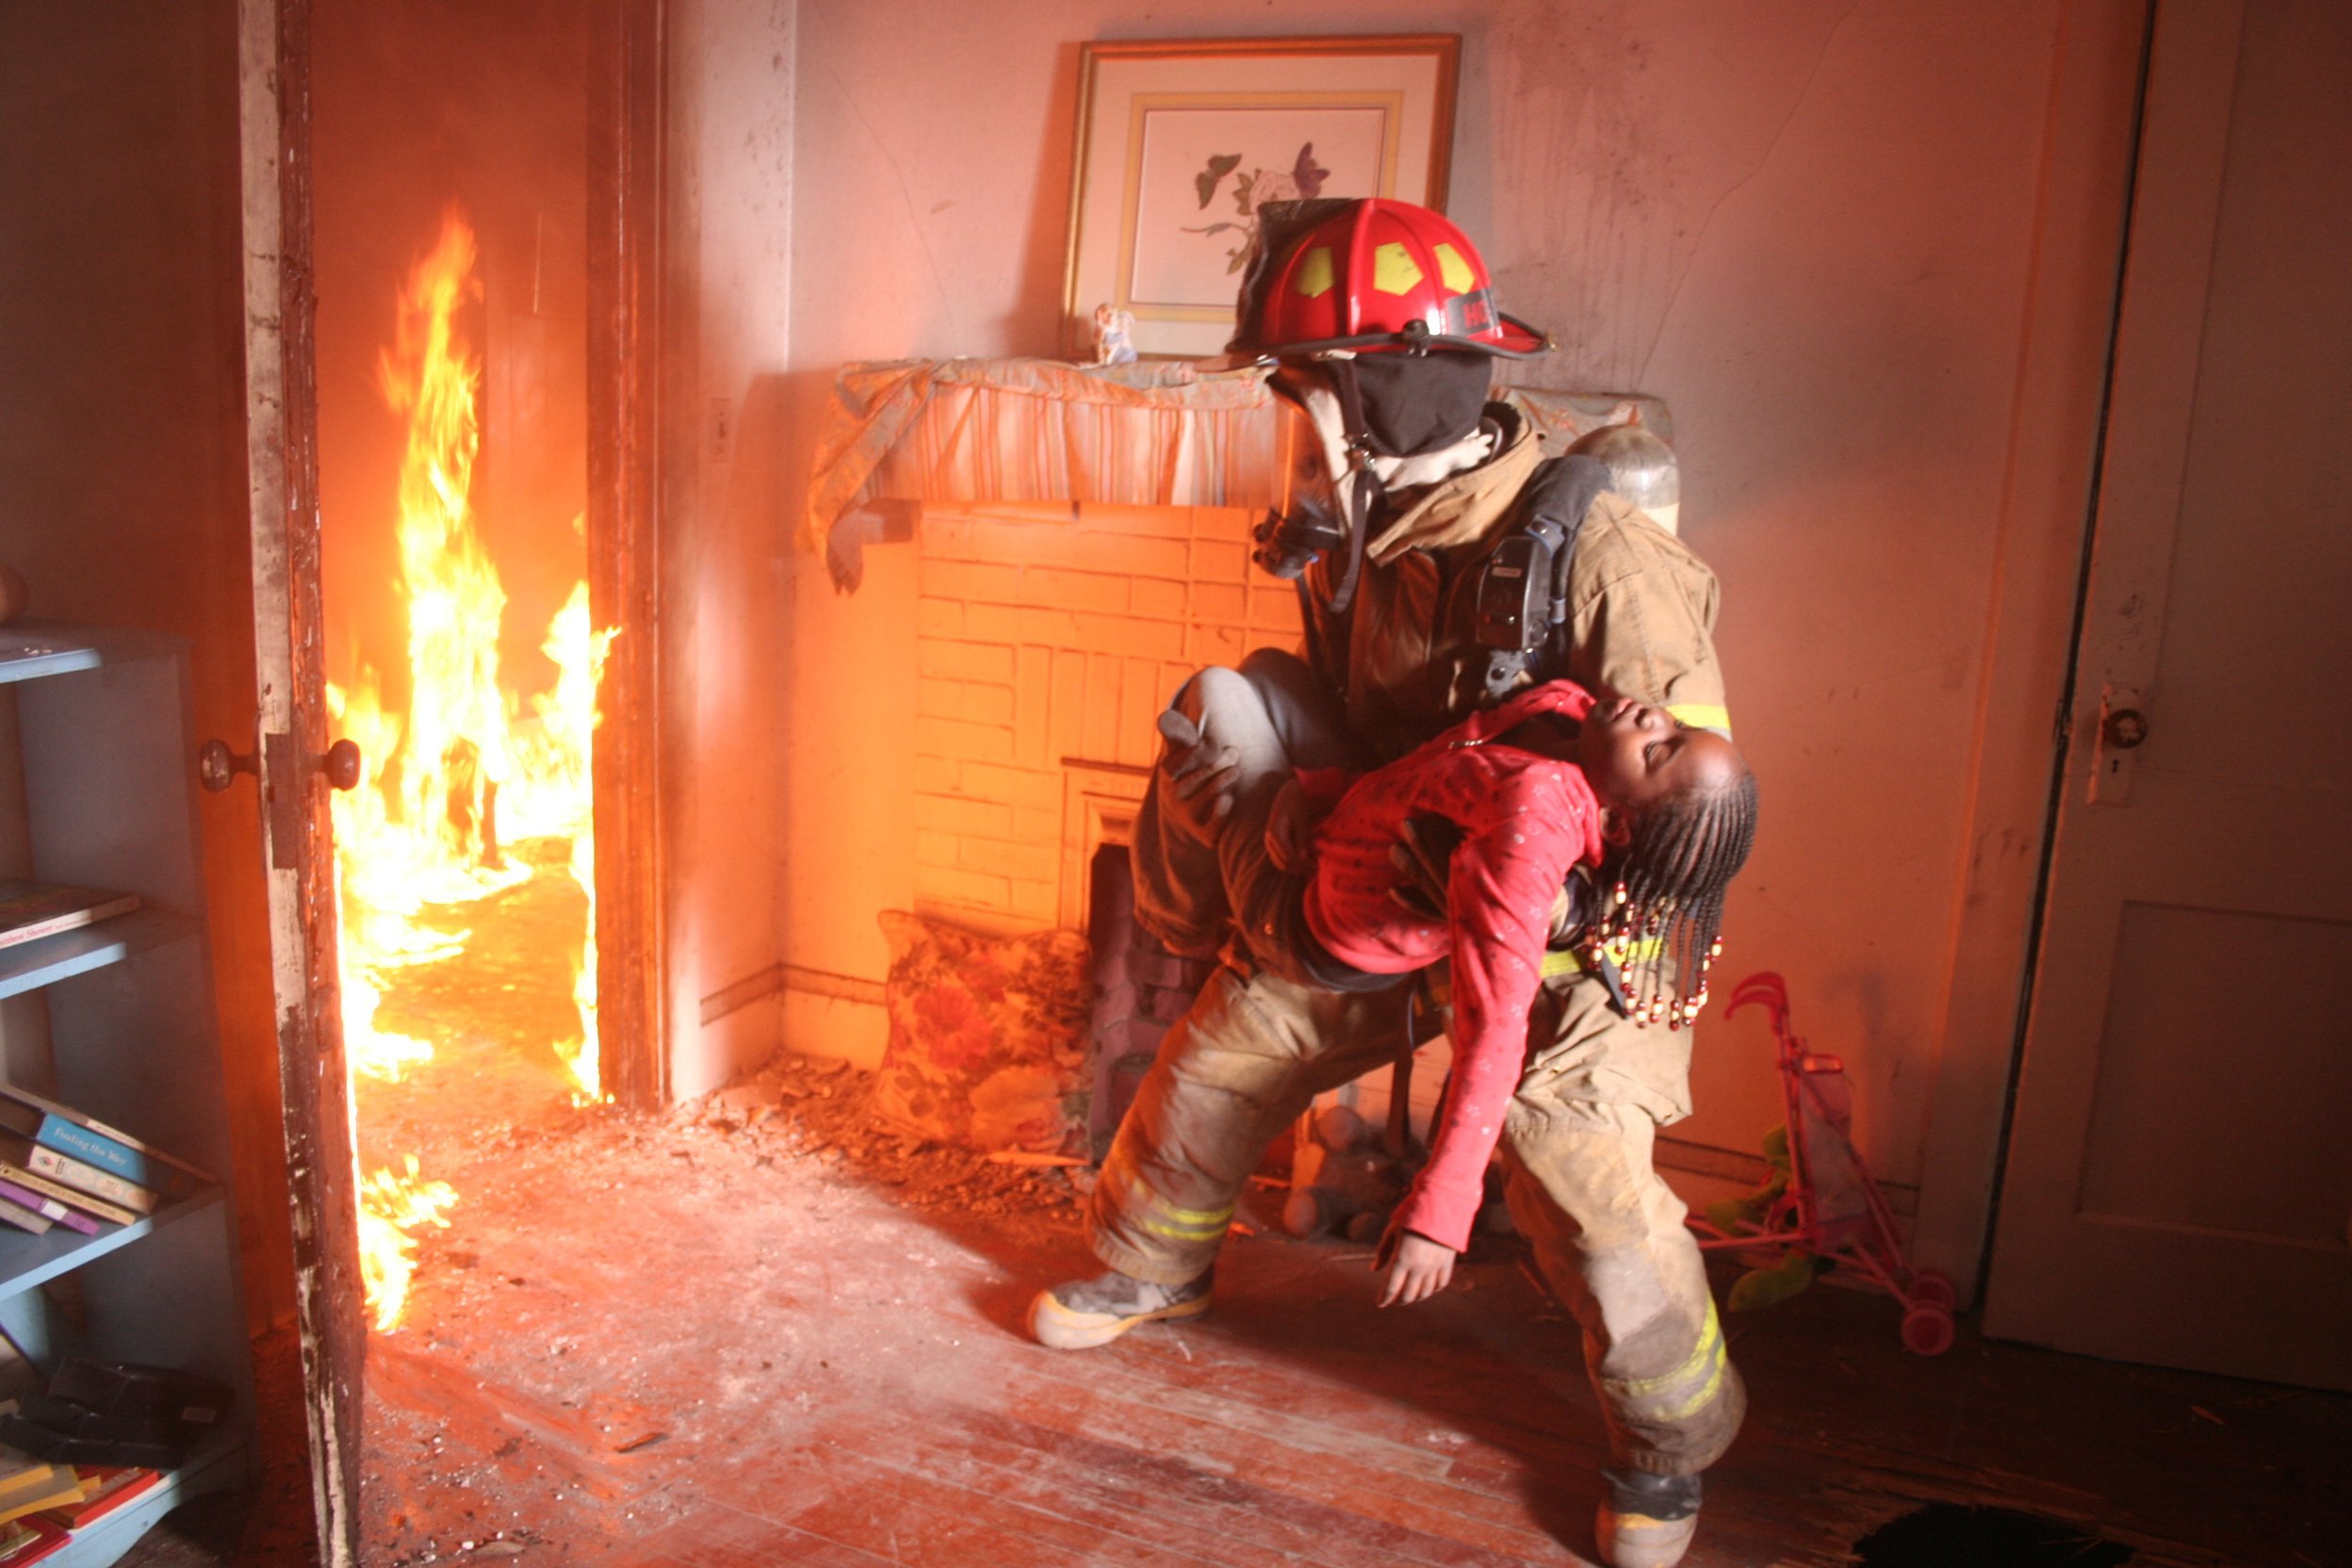 Награда во время пожара. Спасение людей из пожара. Пожарный спасает. Пожарные на пожаре.